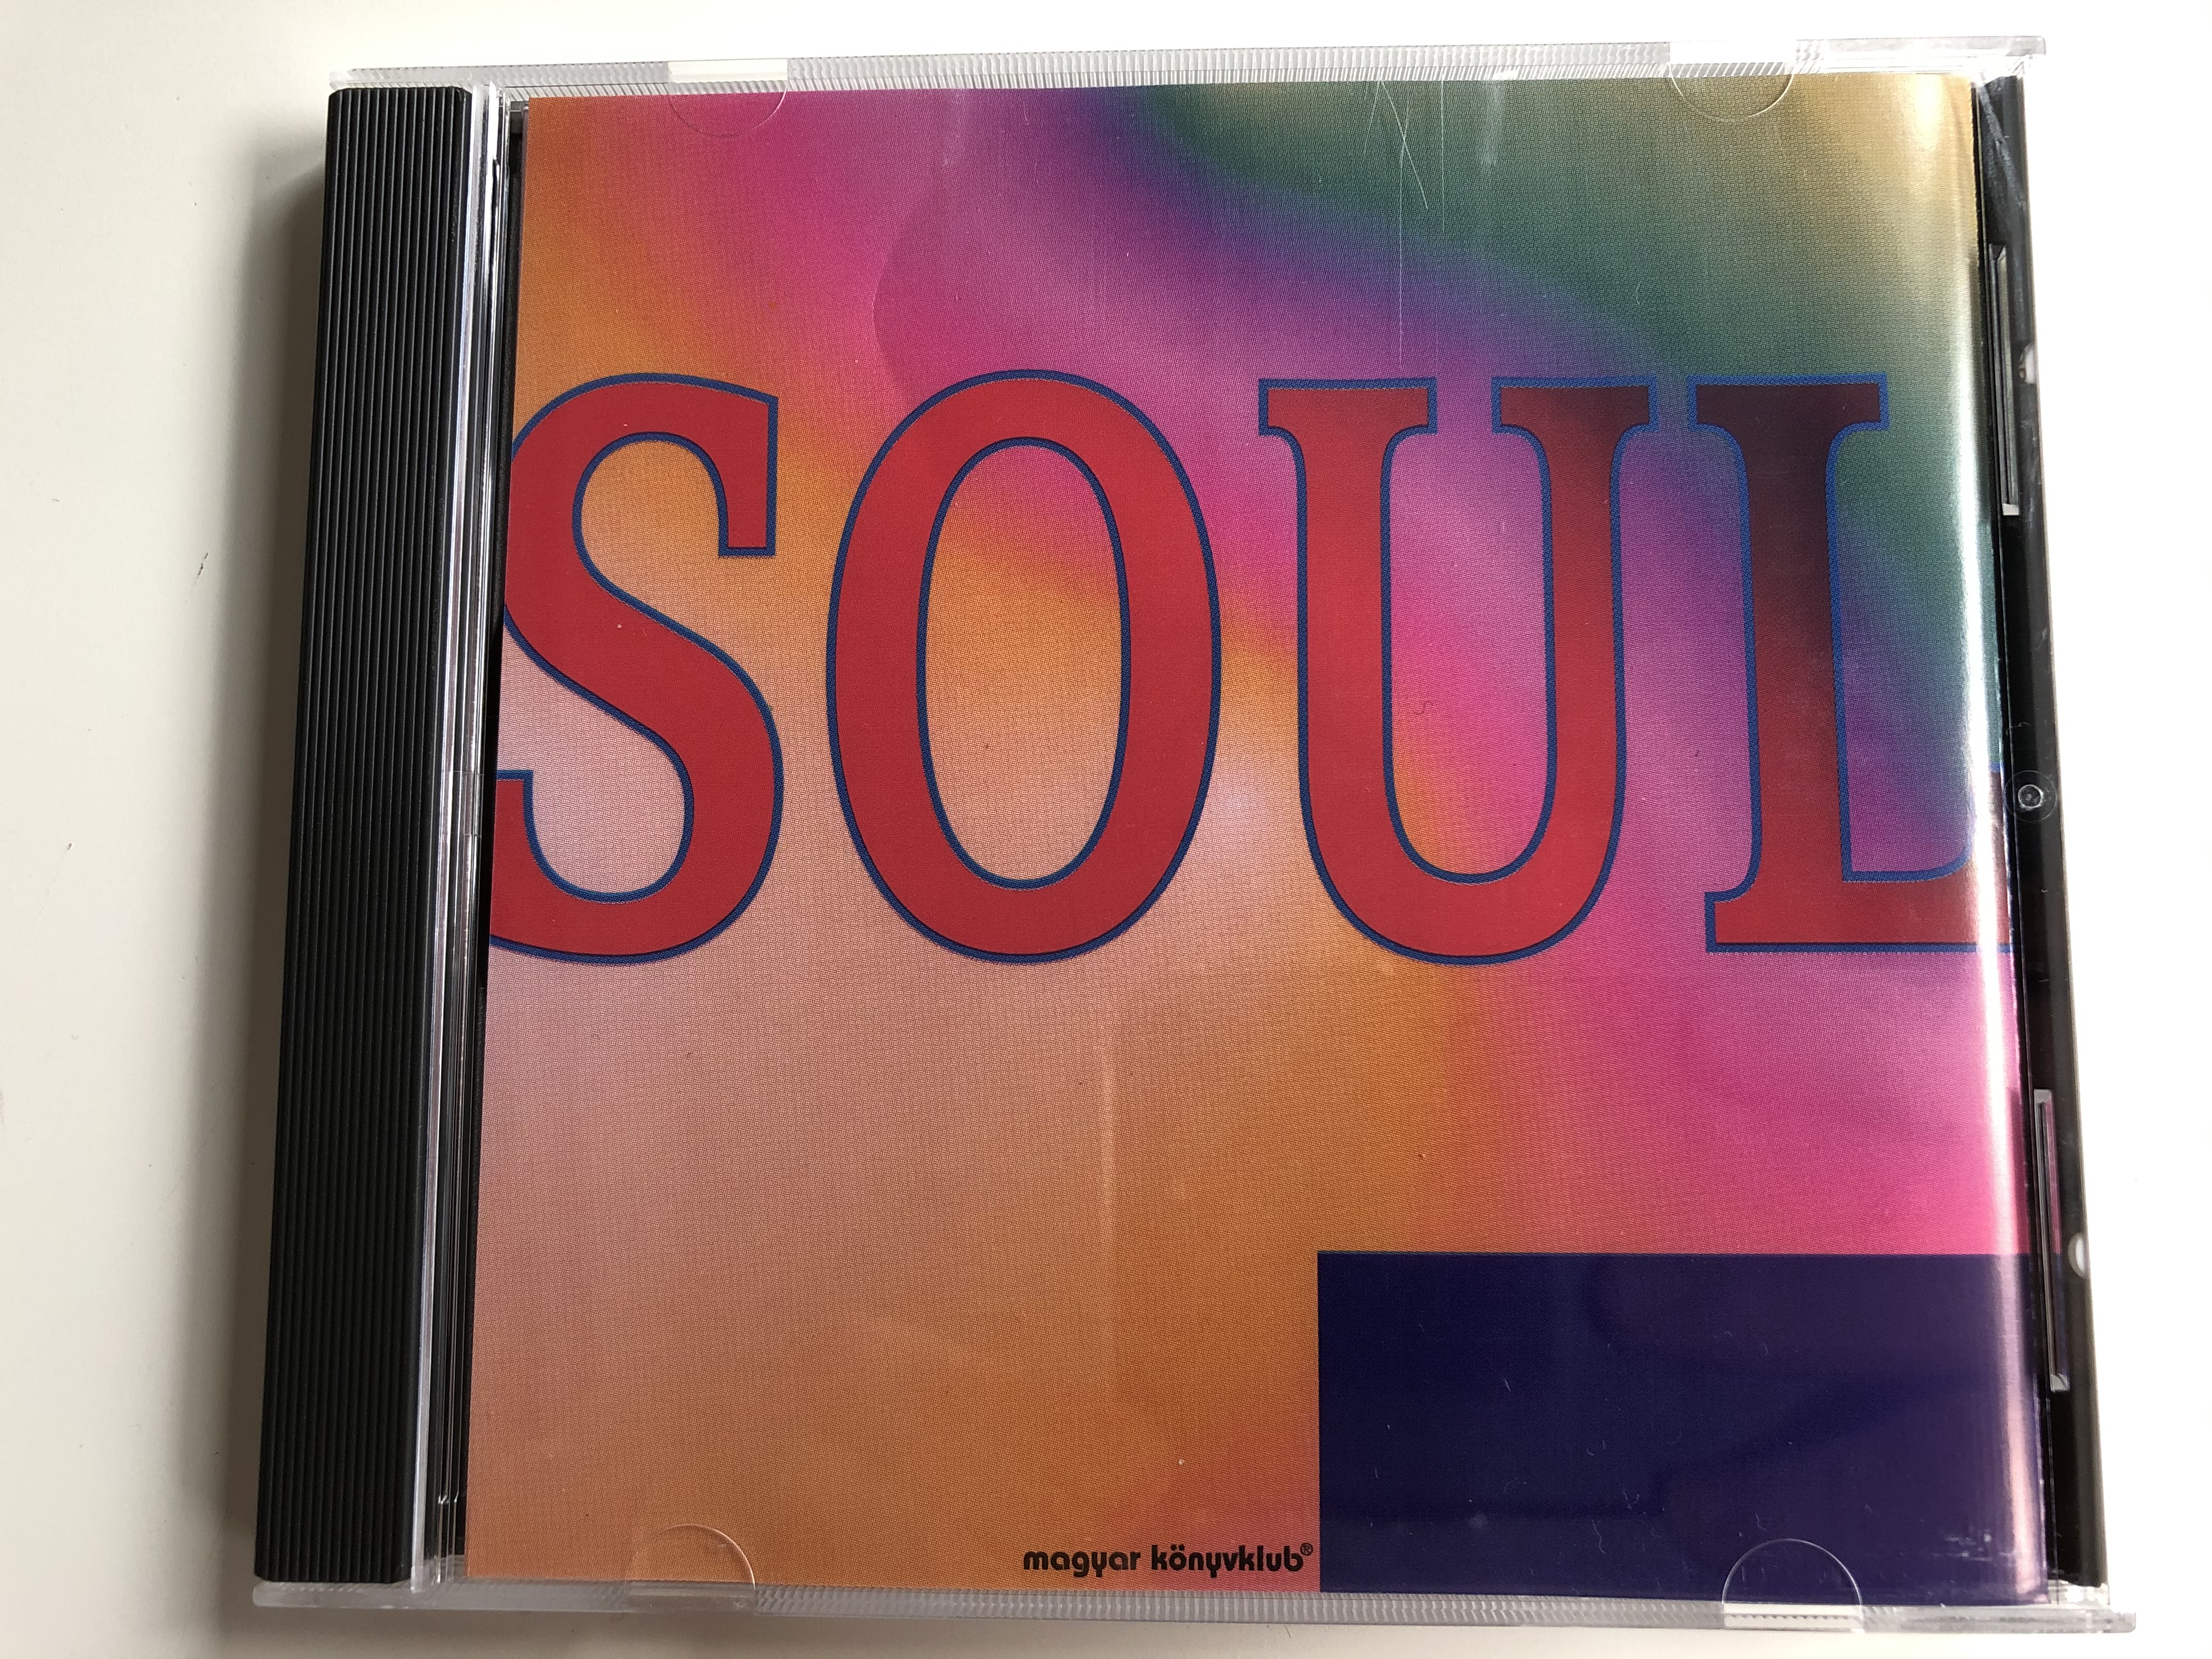 soul-magyar-k-nyvklub-mediasat-poland-audio-cd-1999-med-067-1-.jpg